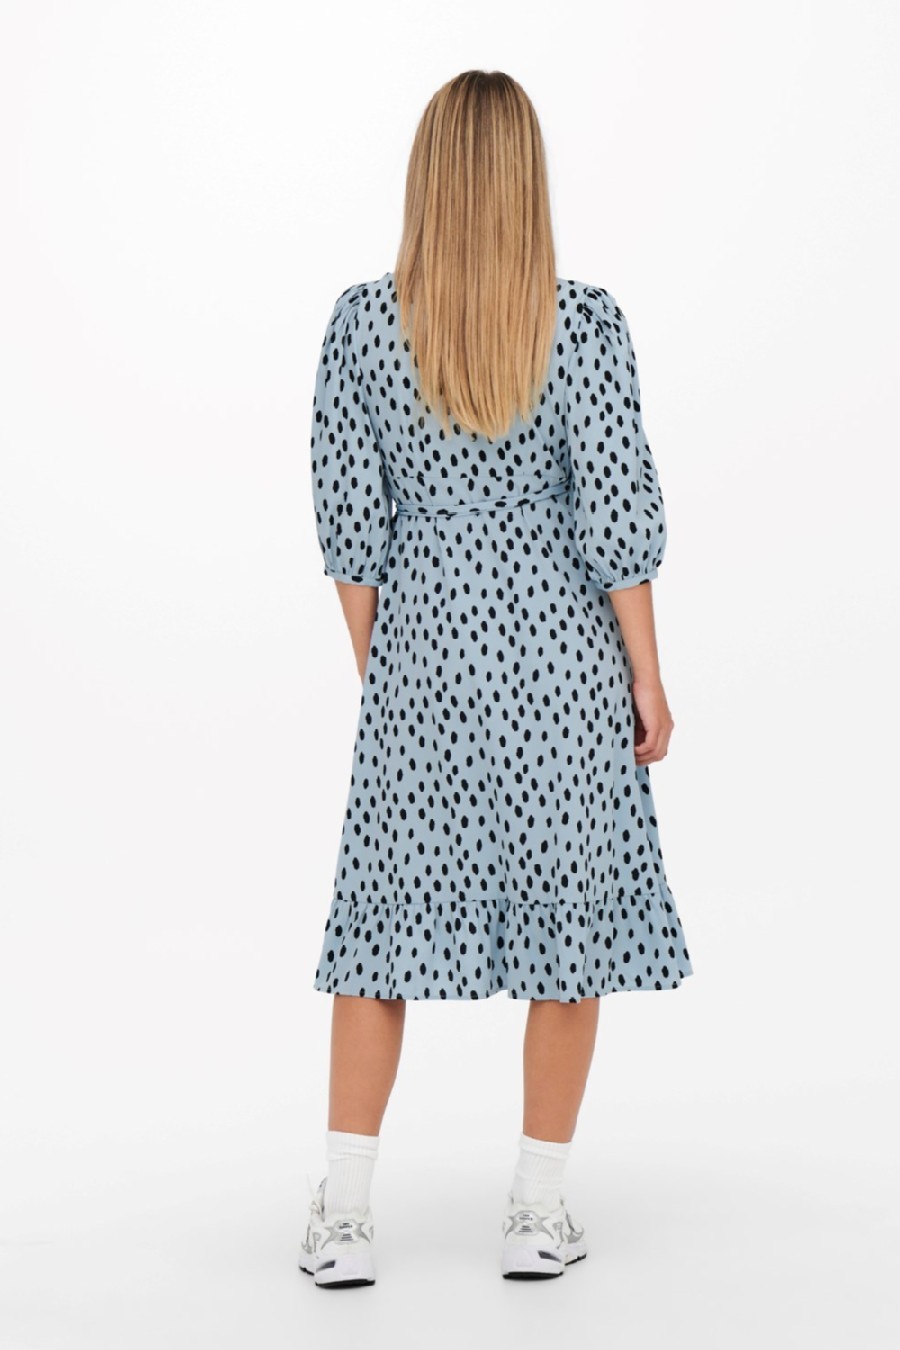 Kleid ONLY 15253350-Blue-Fog